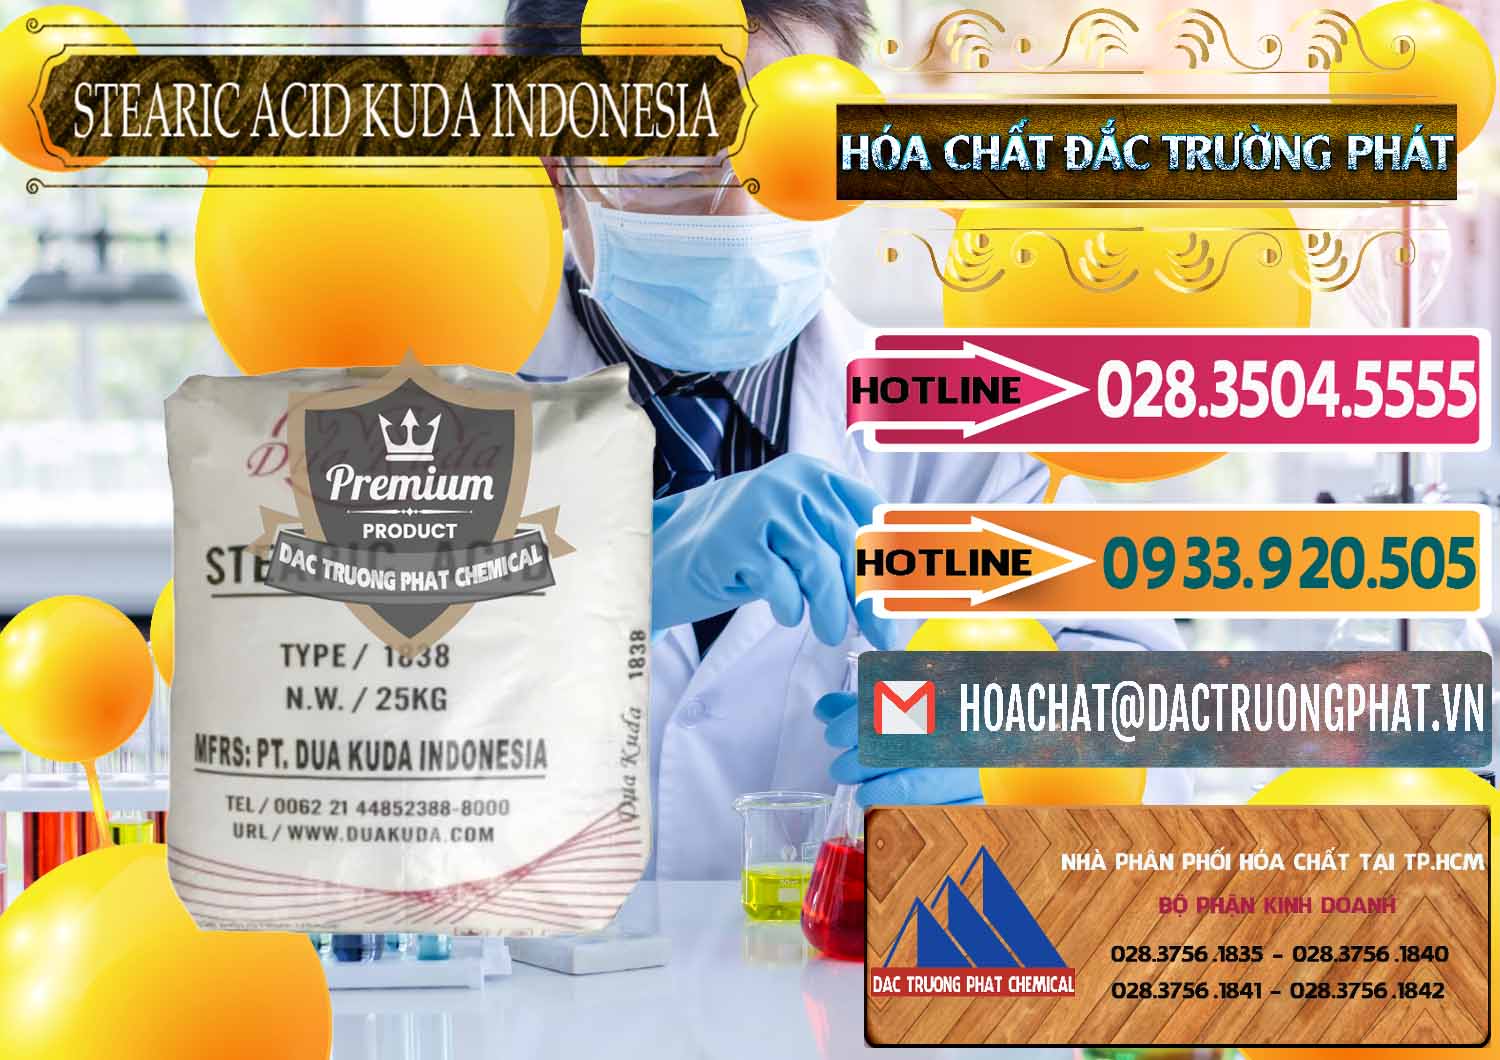 Cty bán và phân phối Axit Stearic - Stearic Acid Dua Kuda Indonesia - 0388 - Phân phối ( bán ) hóa chất tại TP.HCM - dactruongphat.vn